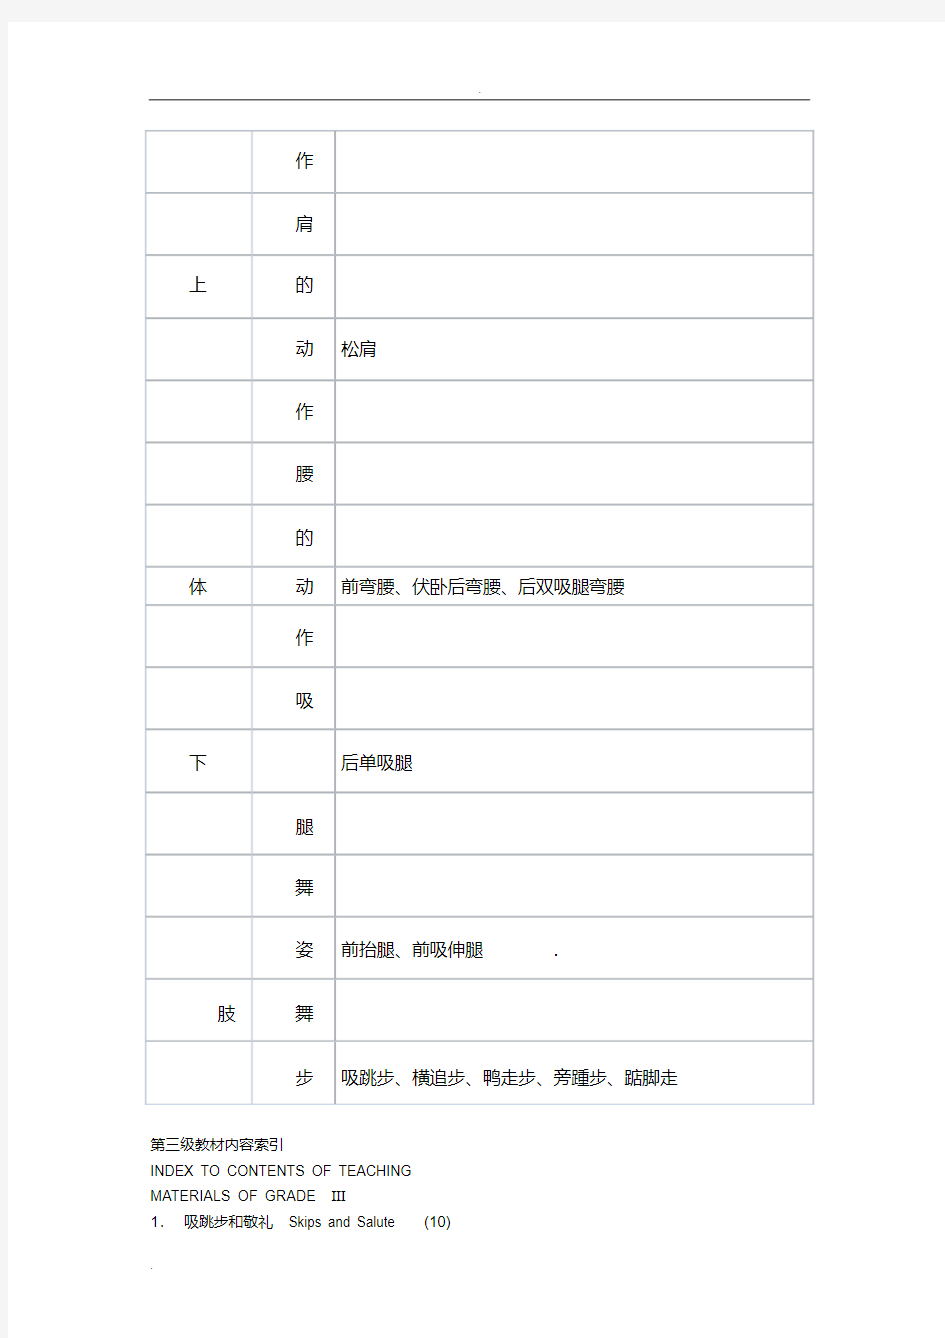 中国舞等级考试教材第三级(图文)